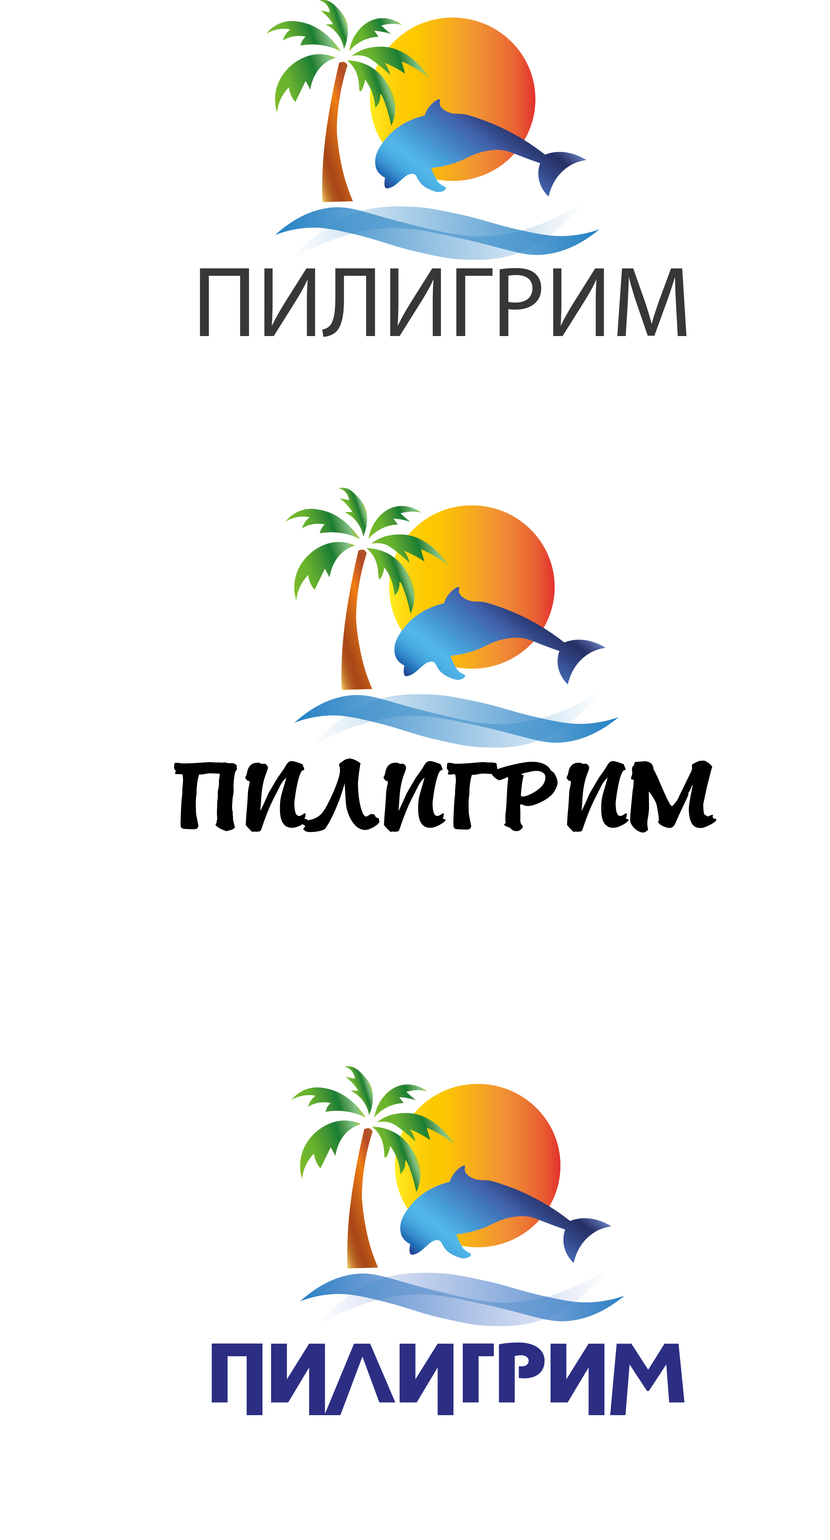 Данный логотип запомниться и будет выделять вас среди конкурентов - Логотип для туроператора